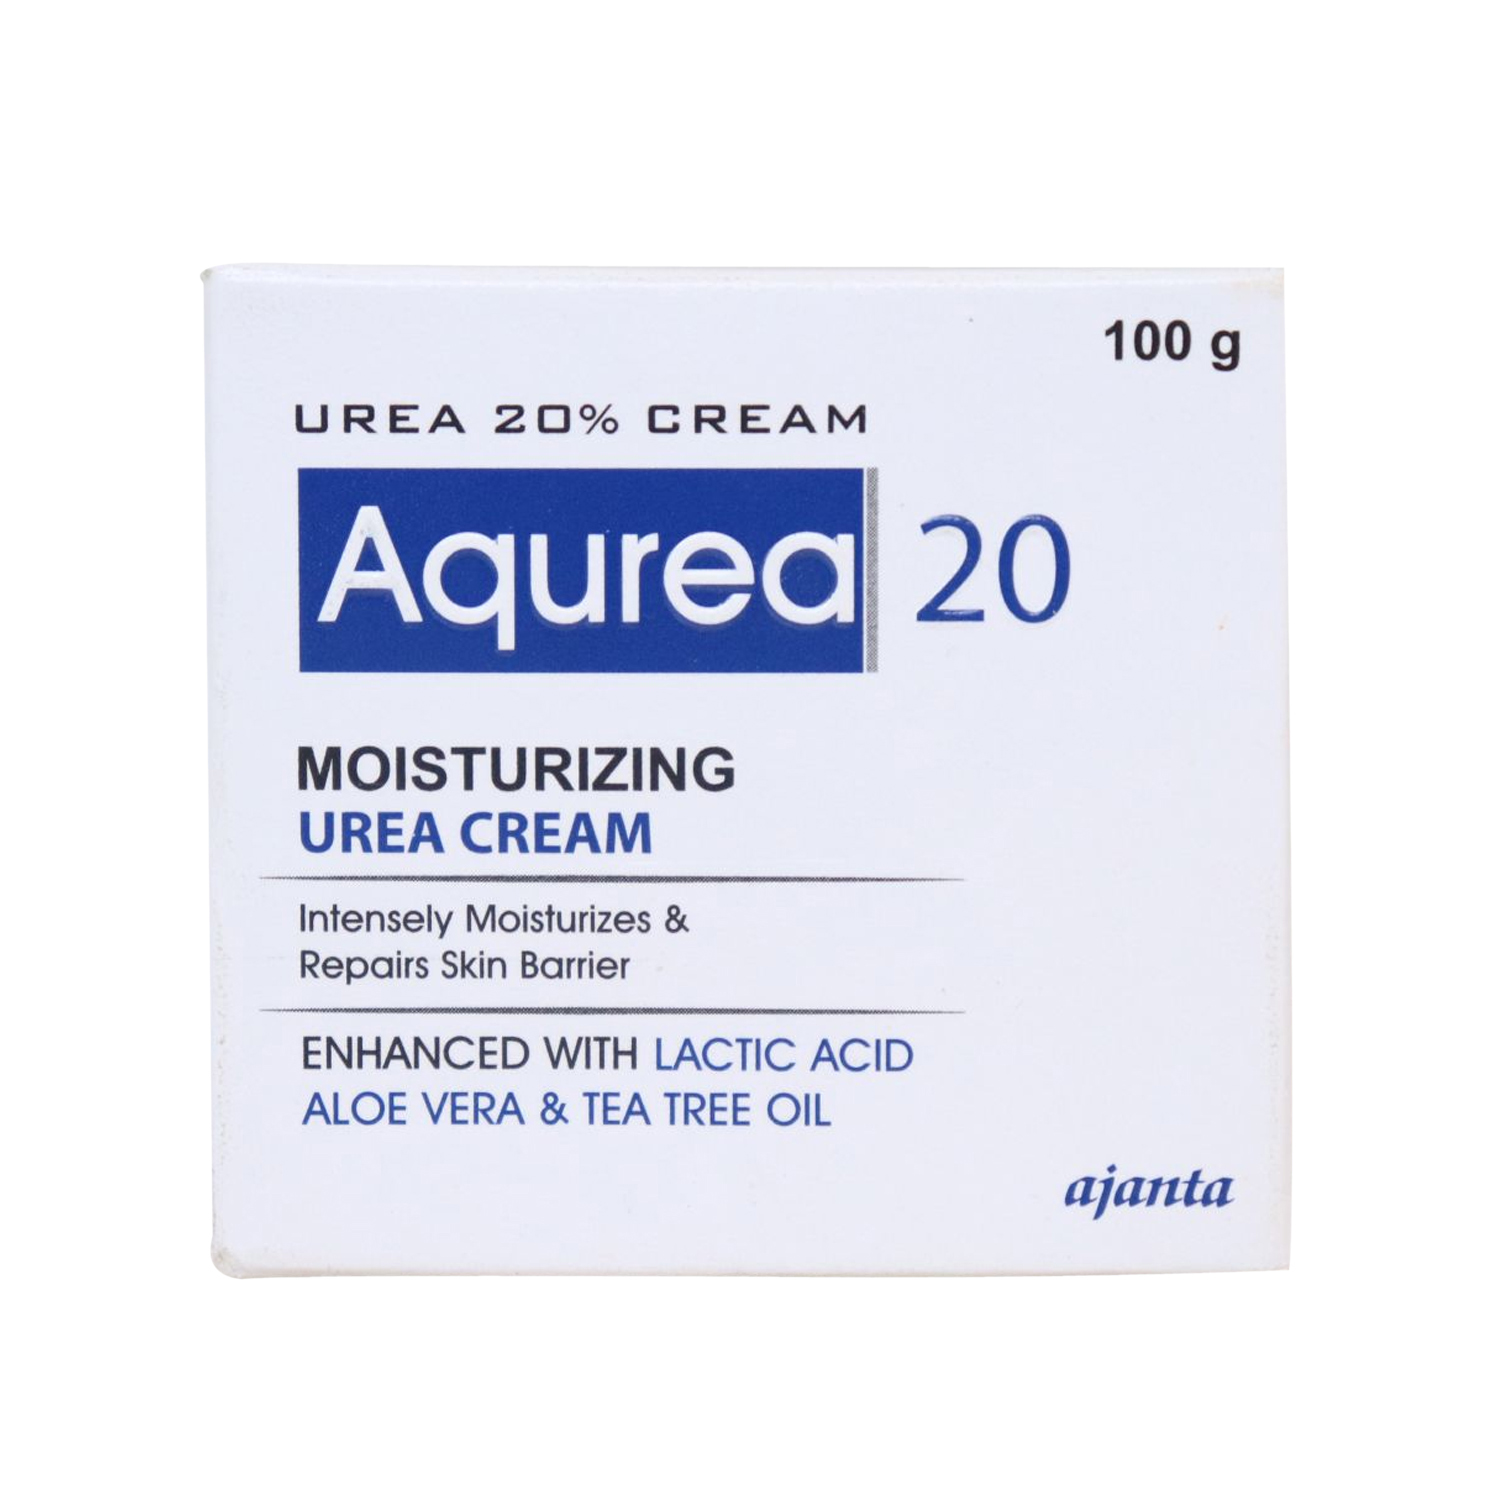 Aqurea 20 Moisturizing Urea Cream with Lactic Acid, Aloe Vera & Tea Tree Oil